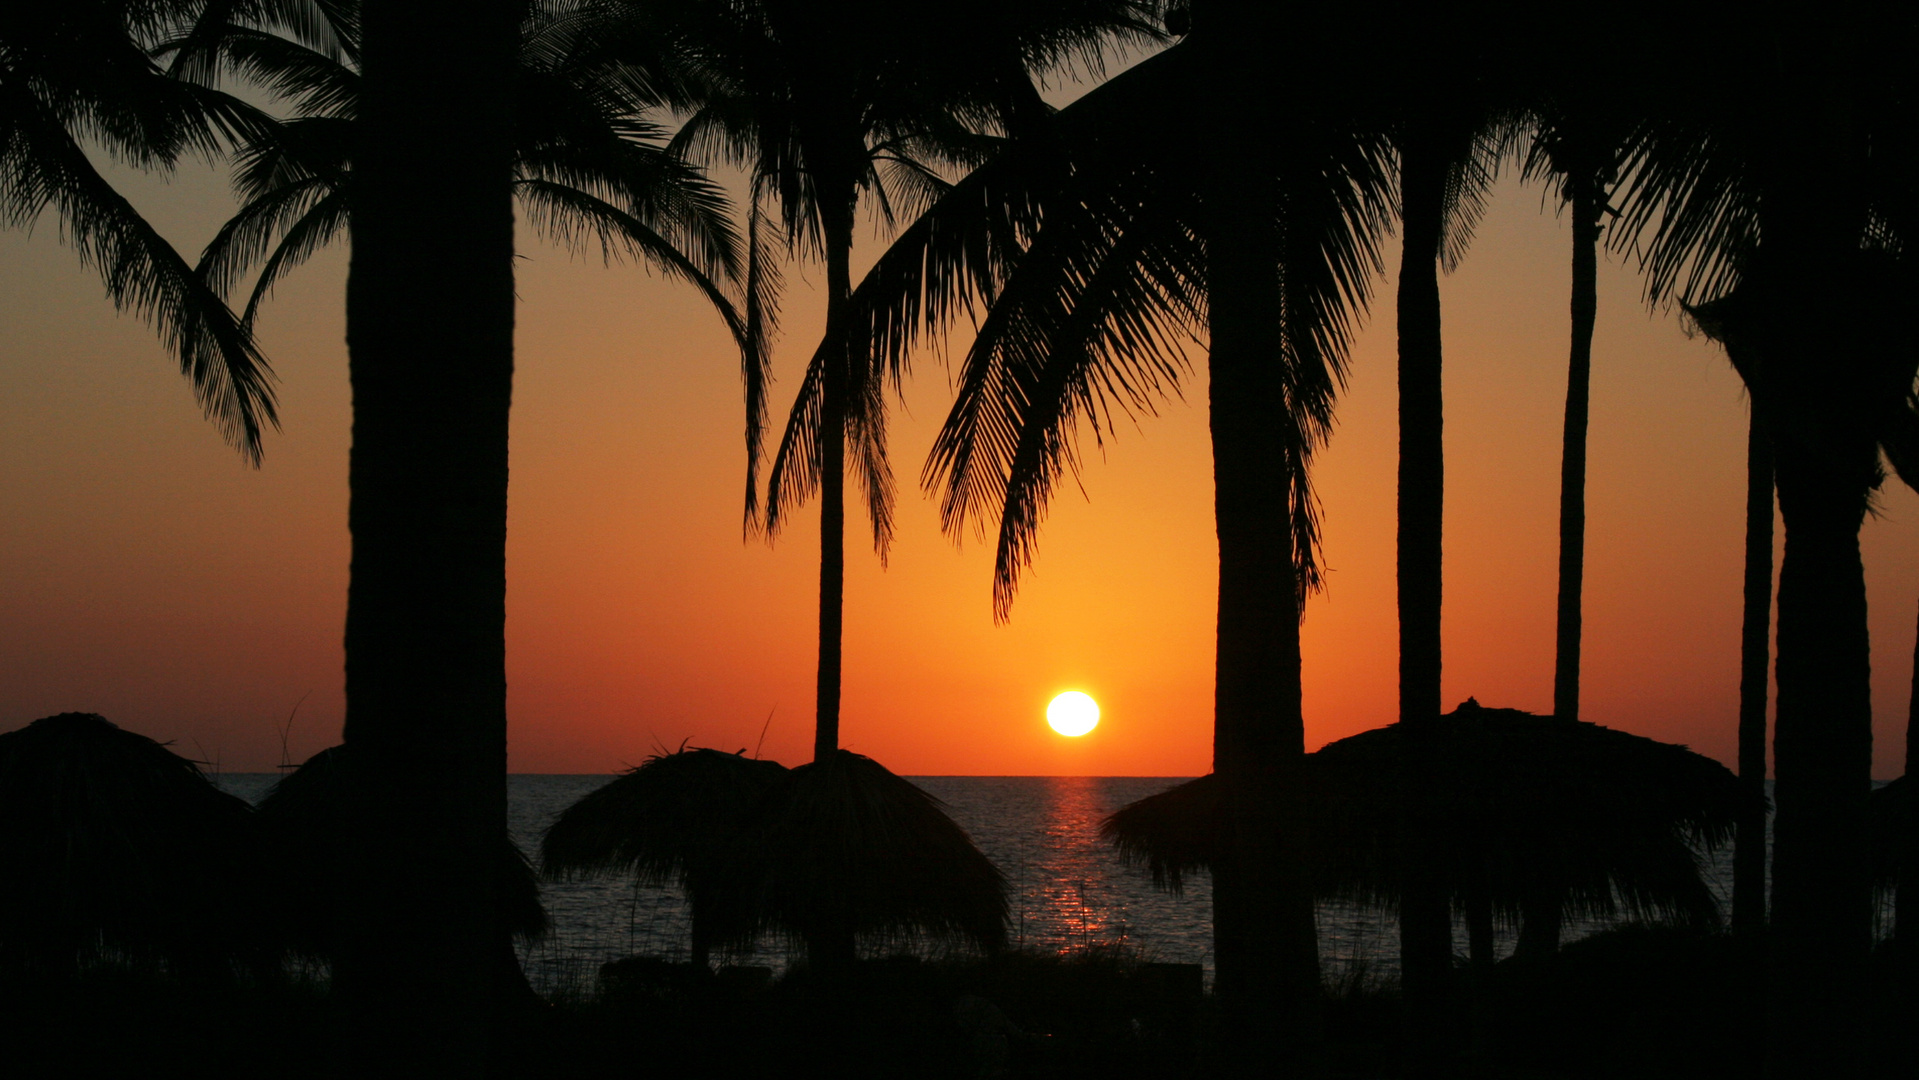 Sonnenaufgang in Cuba - Lever du soleil à Cuba